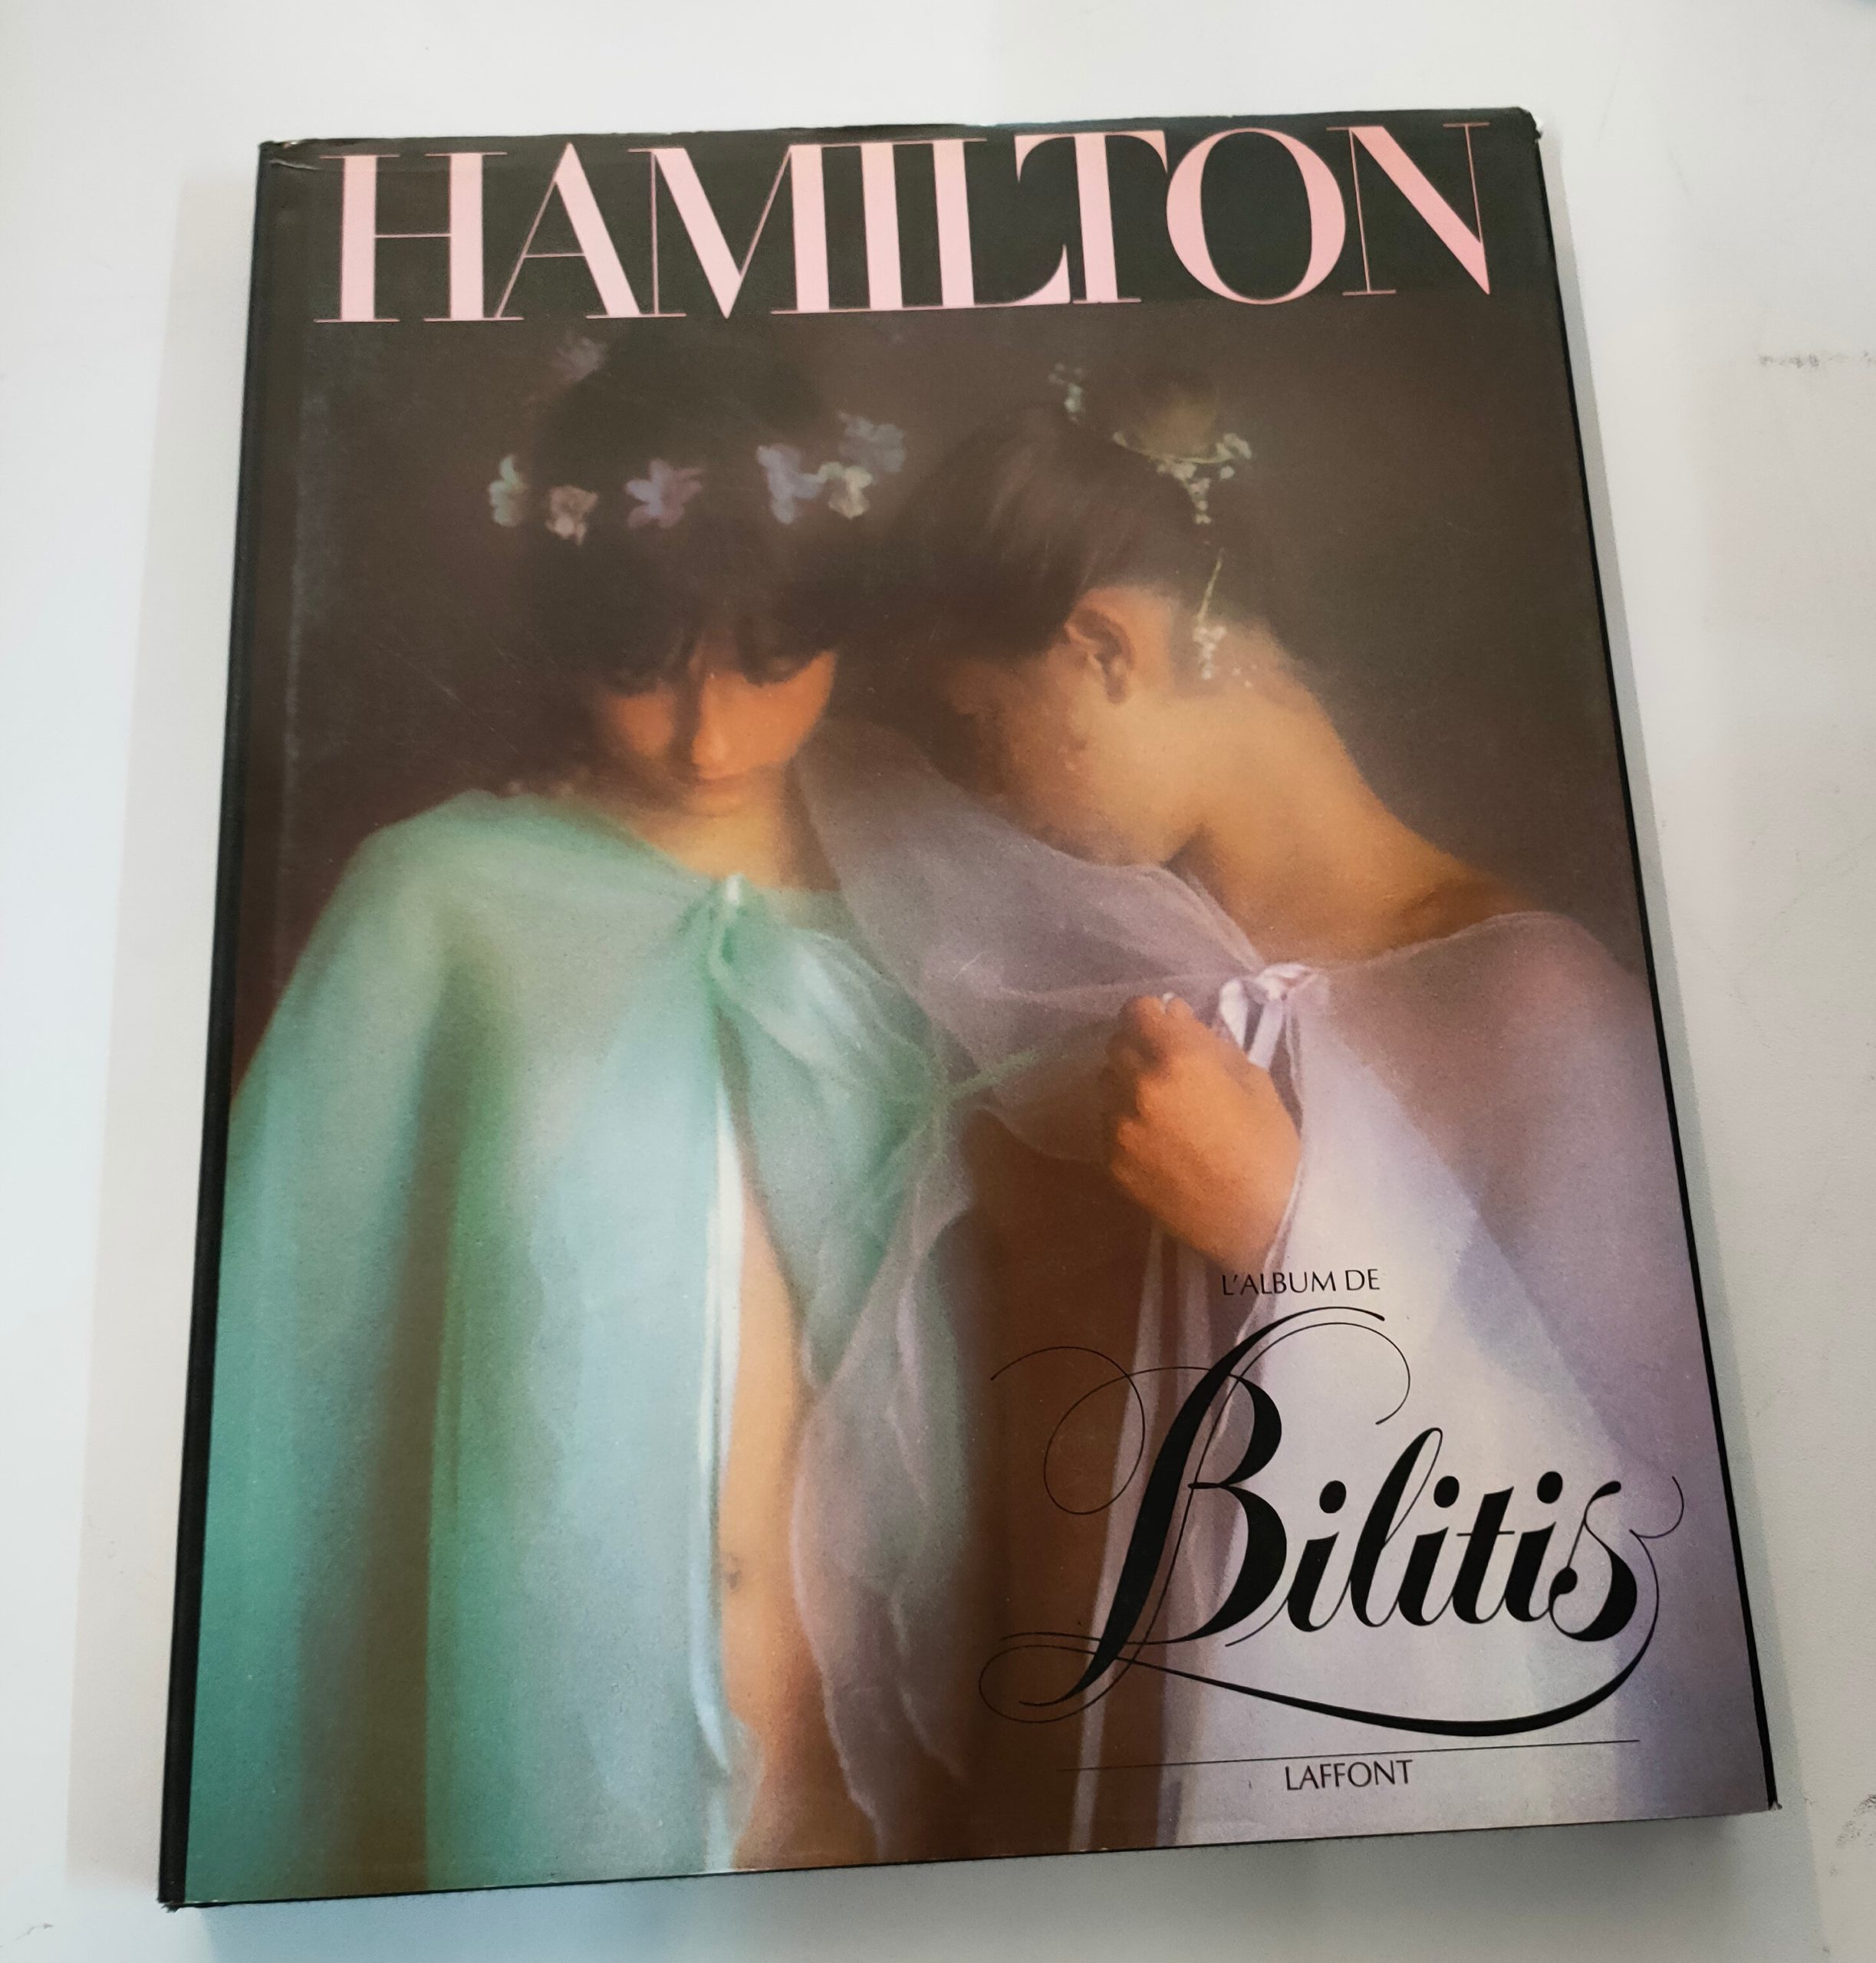 Featured image for “L'album de Bilitis / David Hamilton / Robert Laffont / Photographie / 1977 (Copie)”